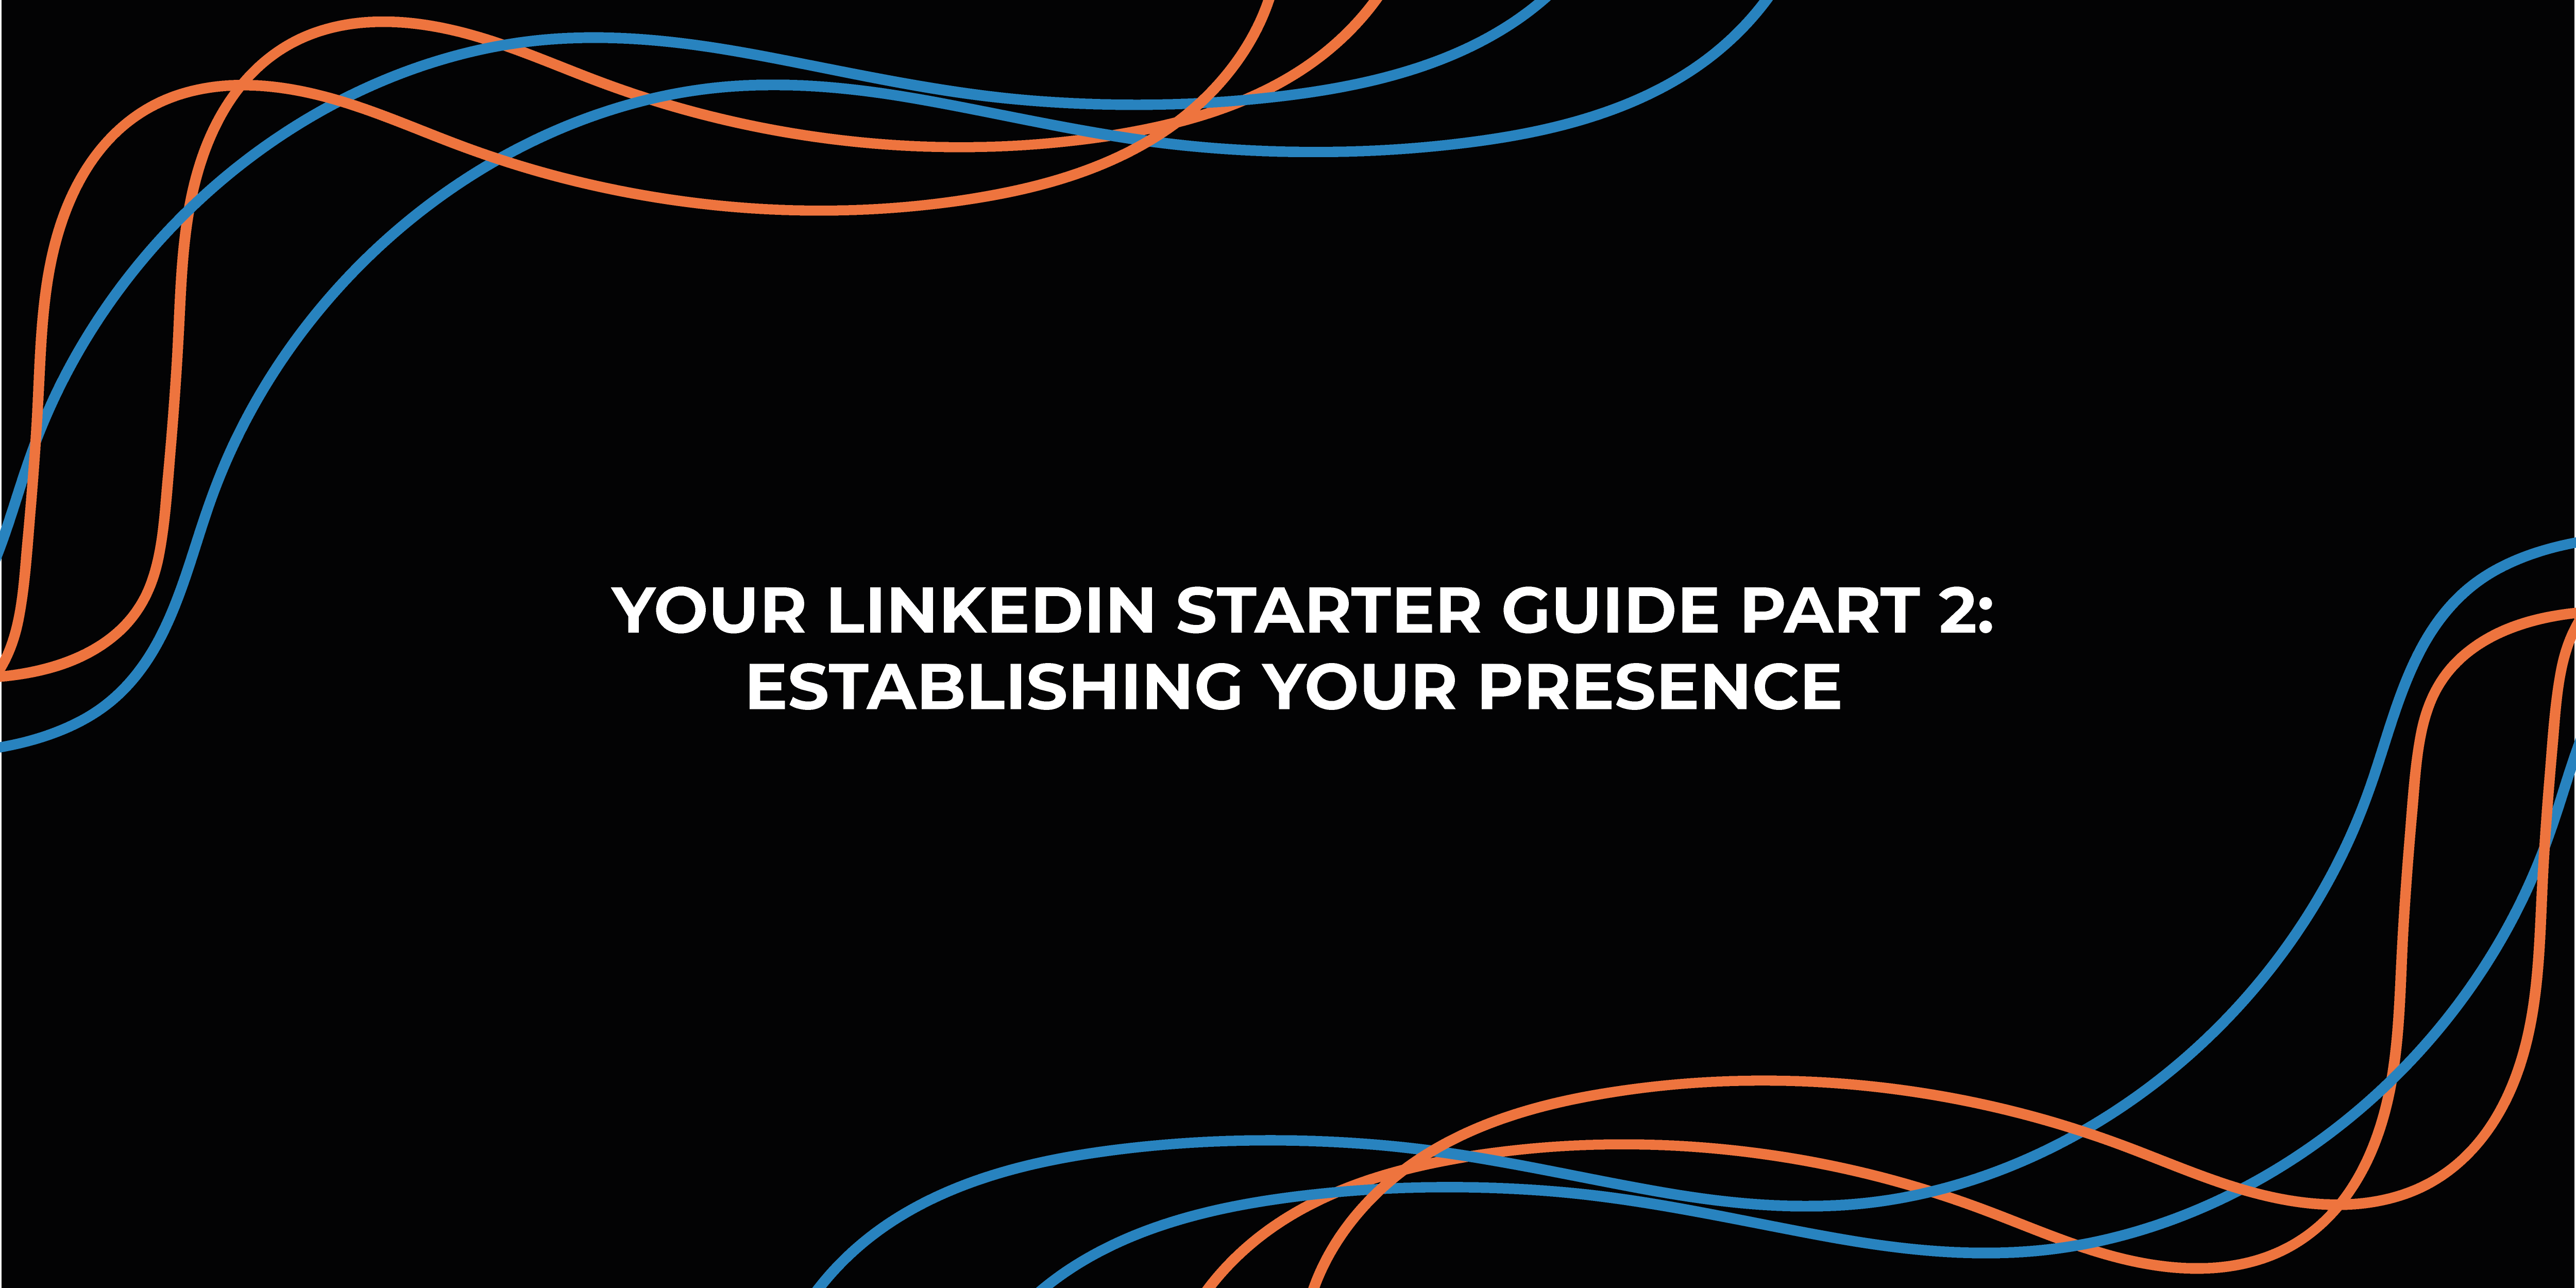 Your LinkedIn Starter Guide Part 2: Establishing Your Presence